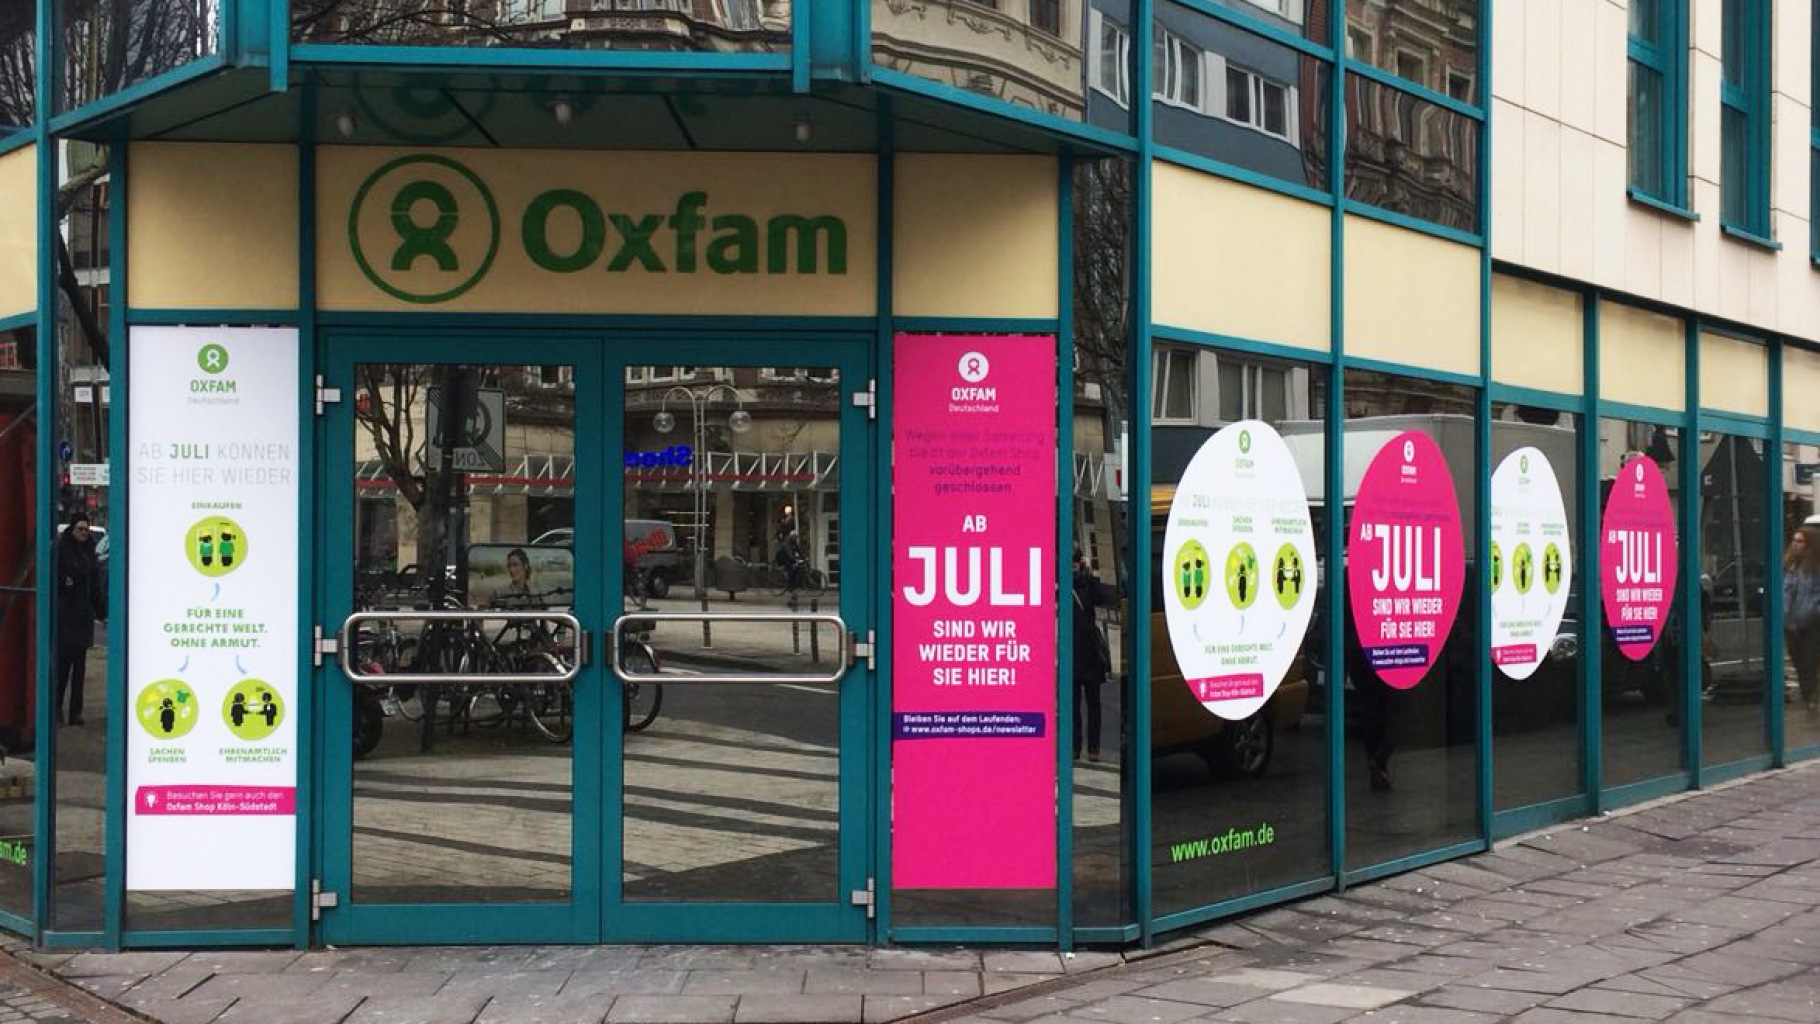 Wegen Sanierungsarbeiten bleibt der Oxfam Shop Köln-Neustadt vorübergehend geschlossen.